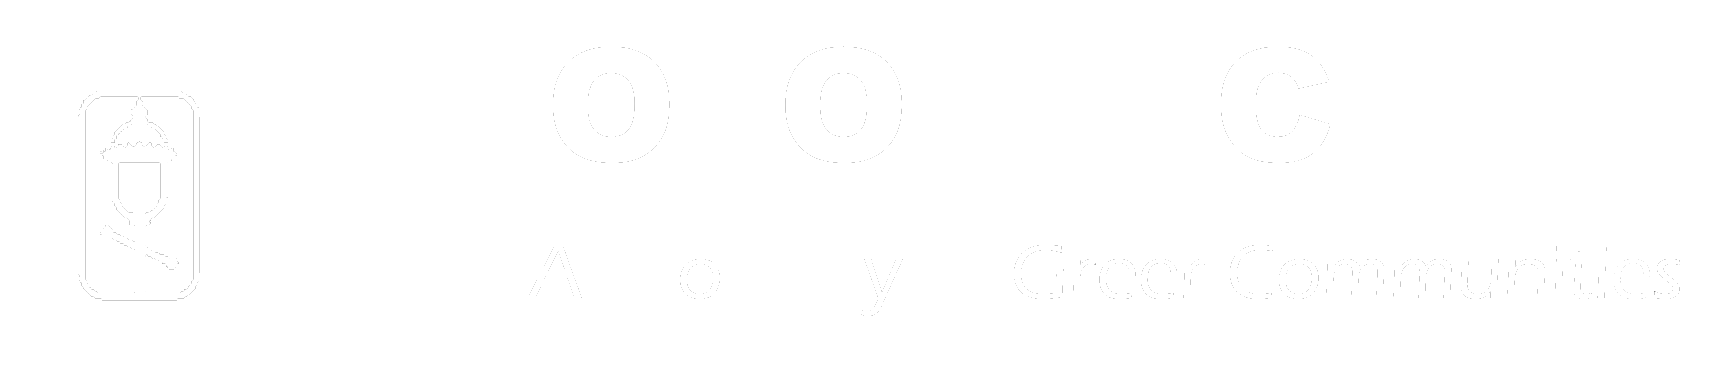 Colony Club homepage